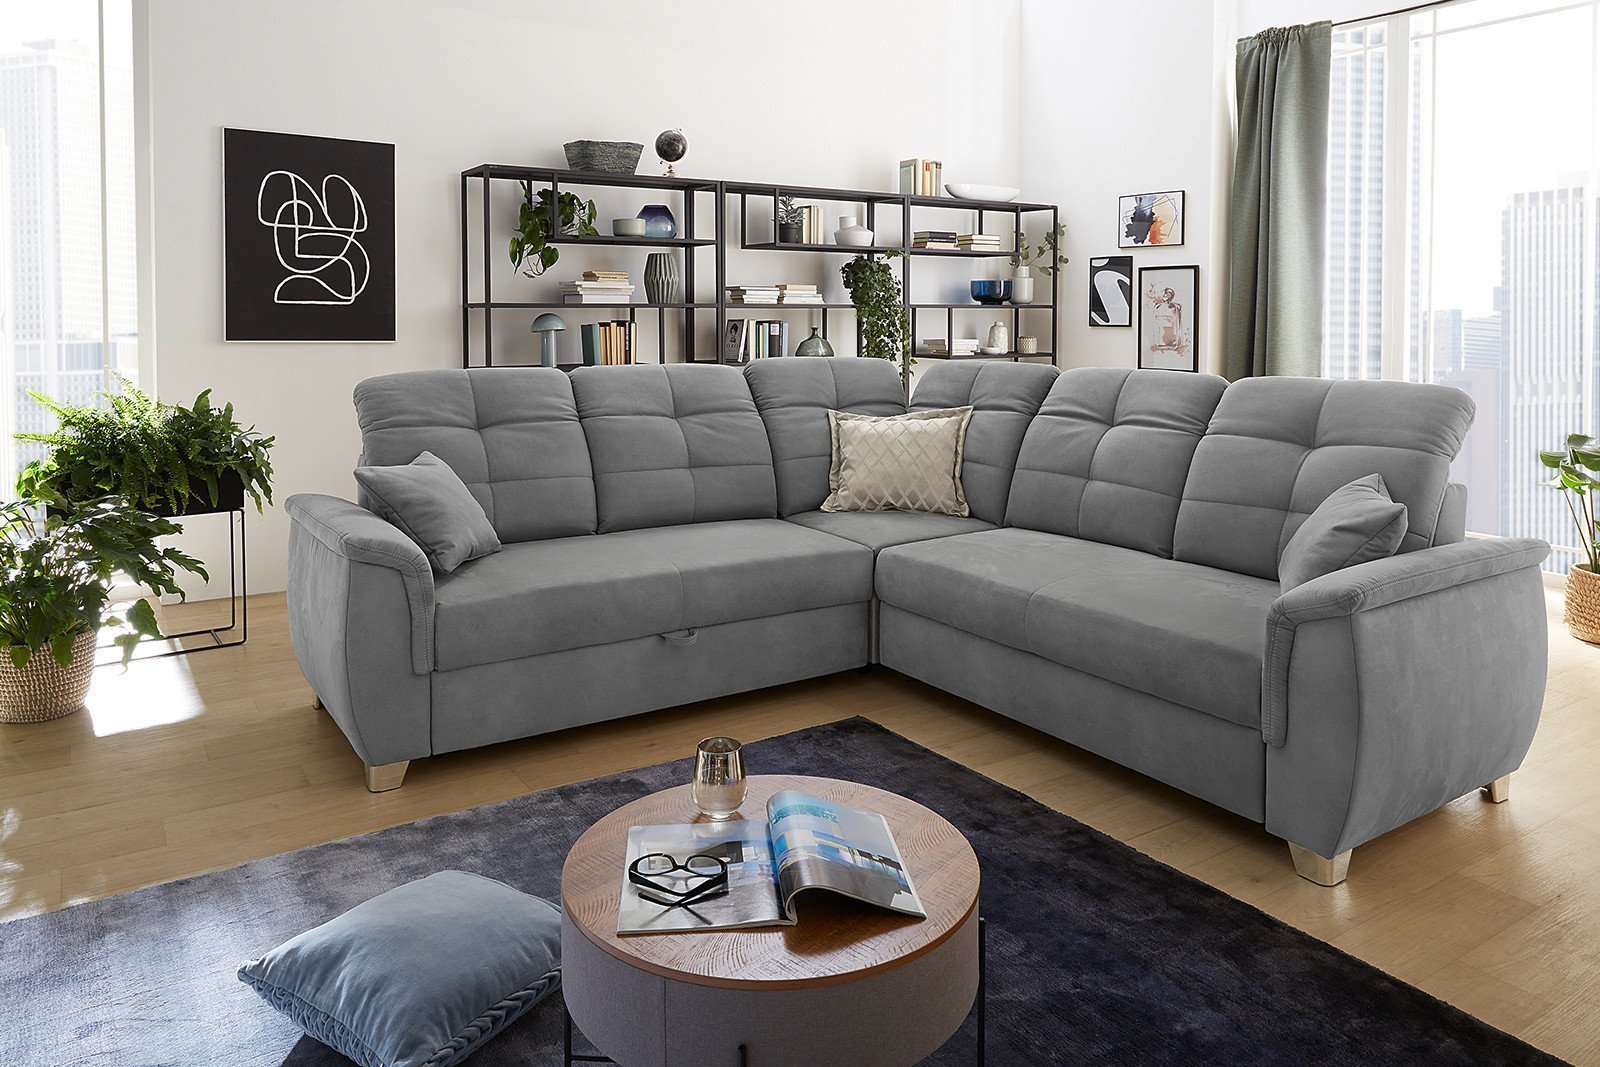 Jockenhöfer Polstermöbel Udine Sofa in Grau | Möbel Letz - Ihr Online-Shop